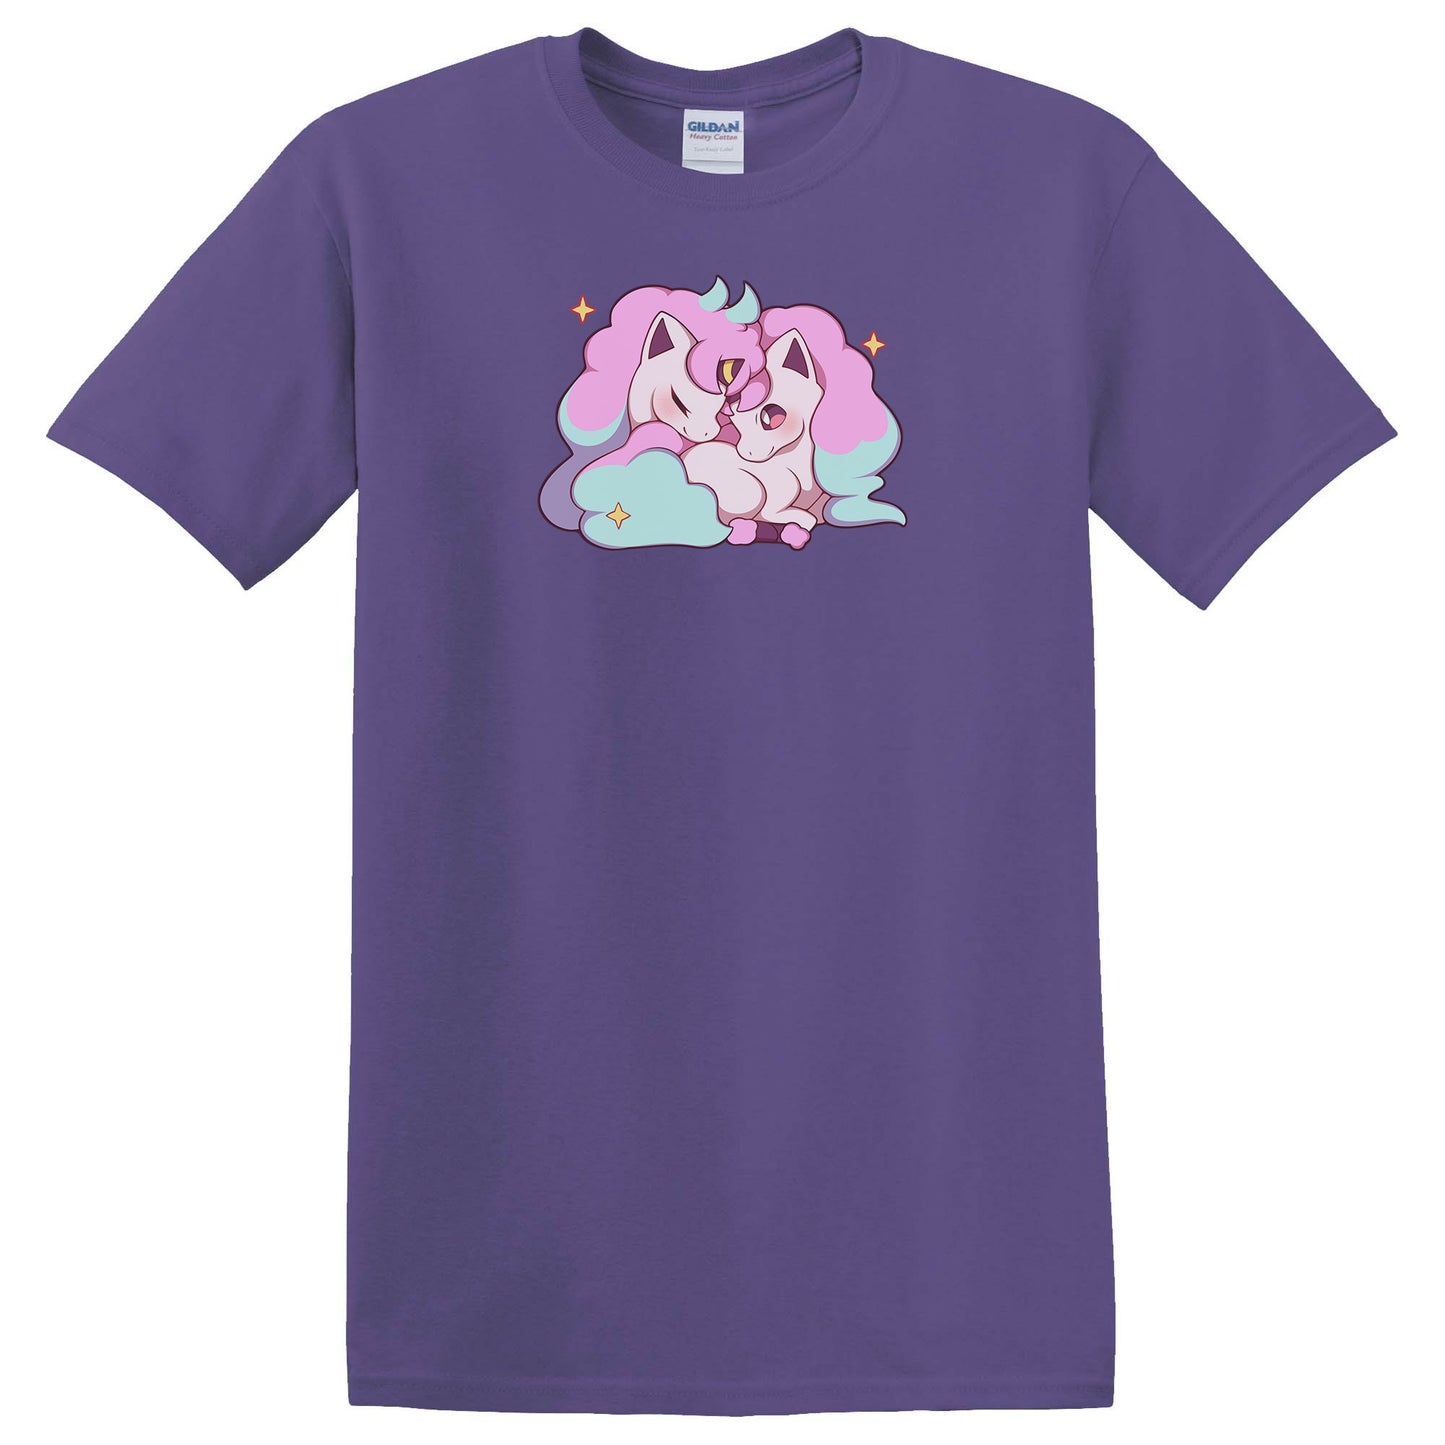 Galarian Ponyta T-Shirt